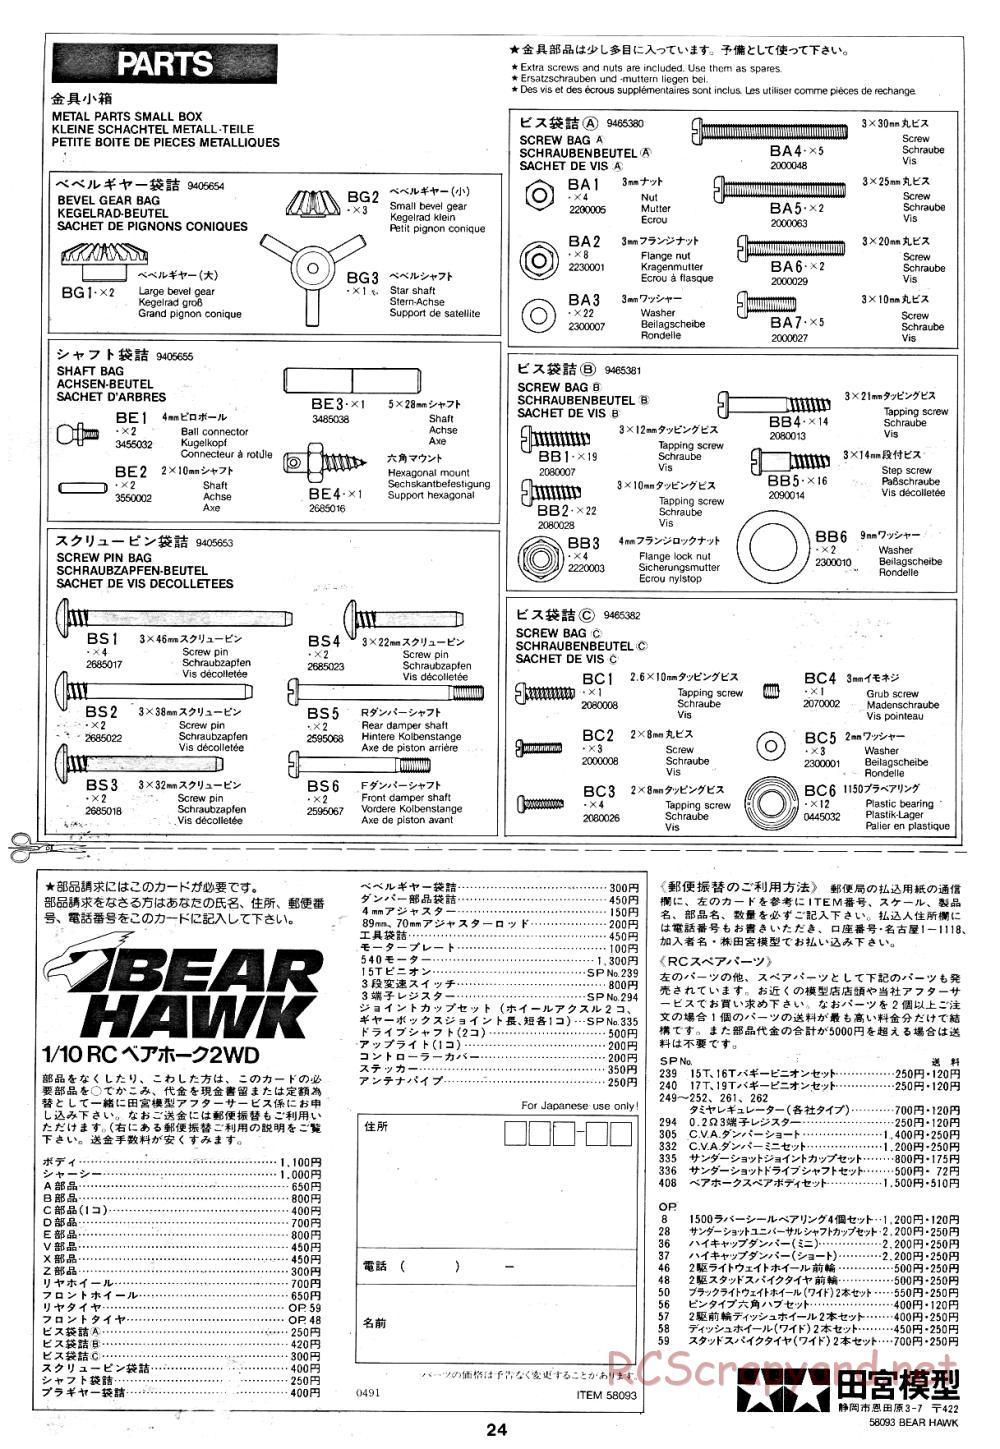 Tamiya - Bear Hawk - 58093 - Manual - Page 24